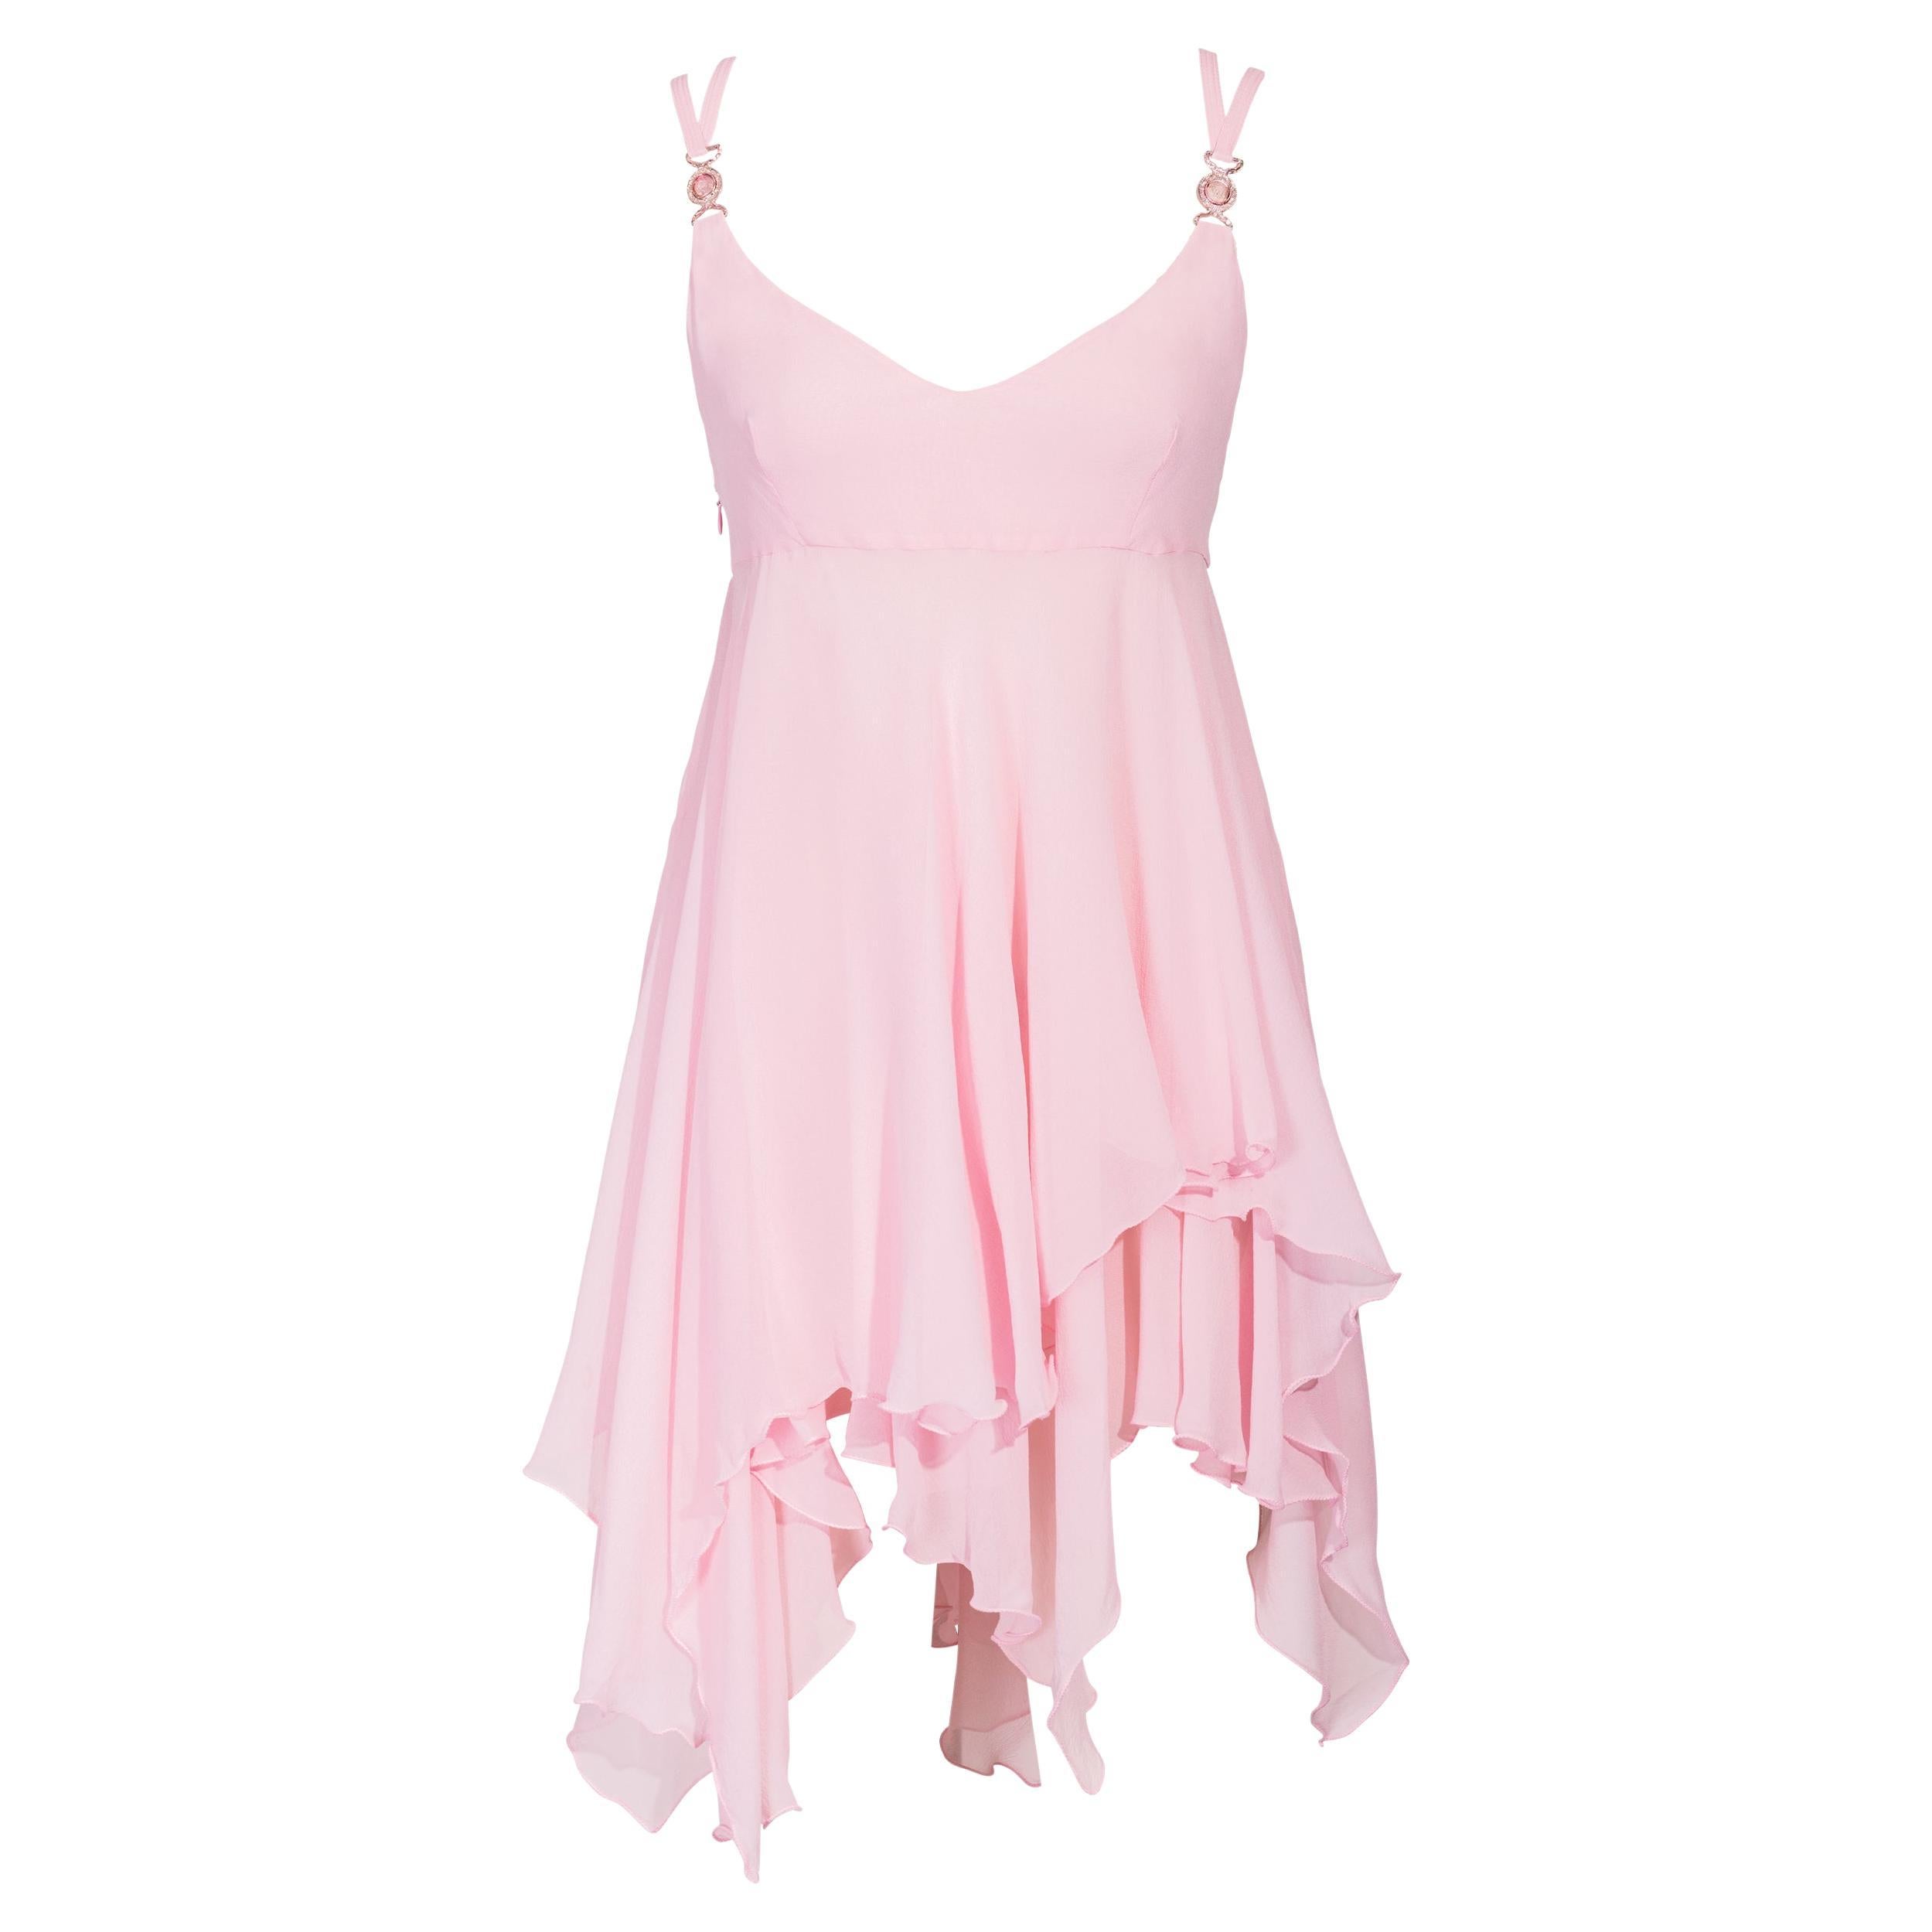 S/S 1995 Gianni Versace Pink Silk Chiffon Mini Dress